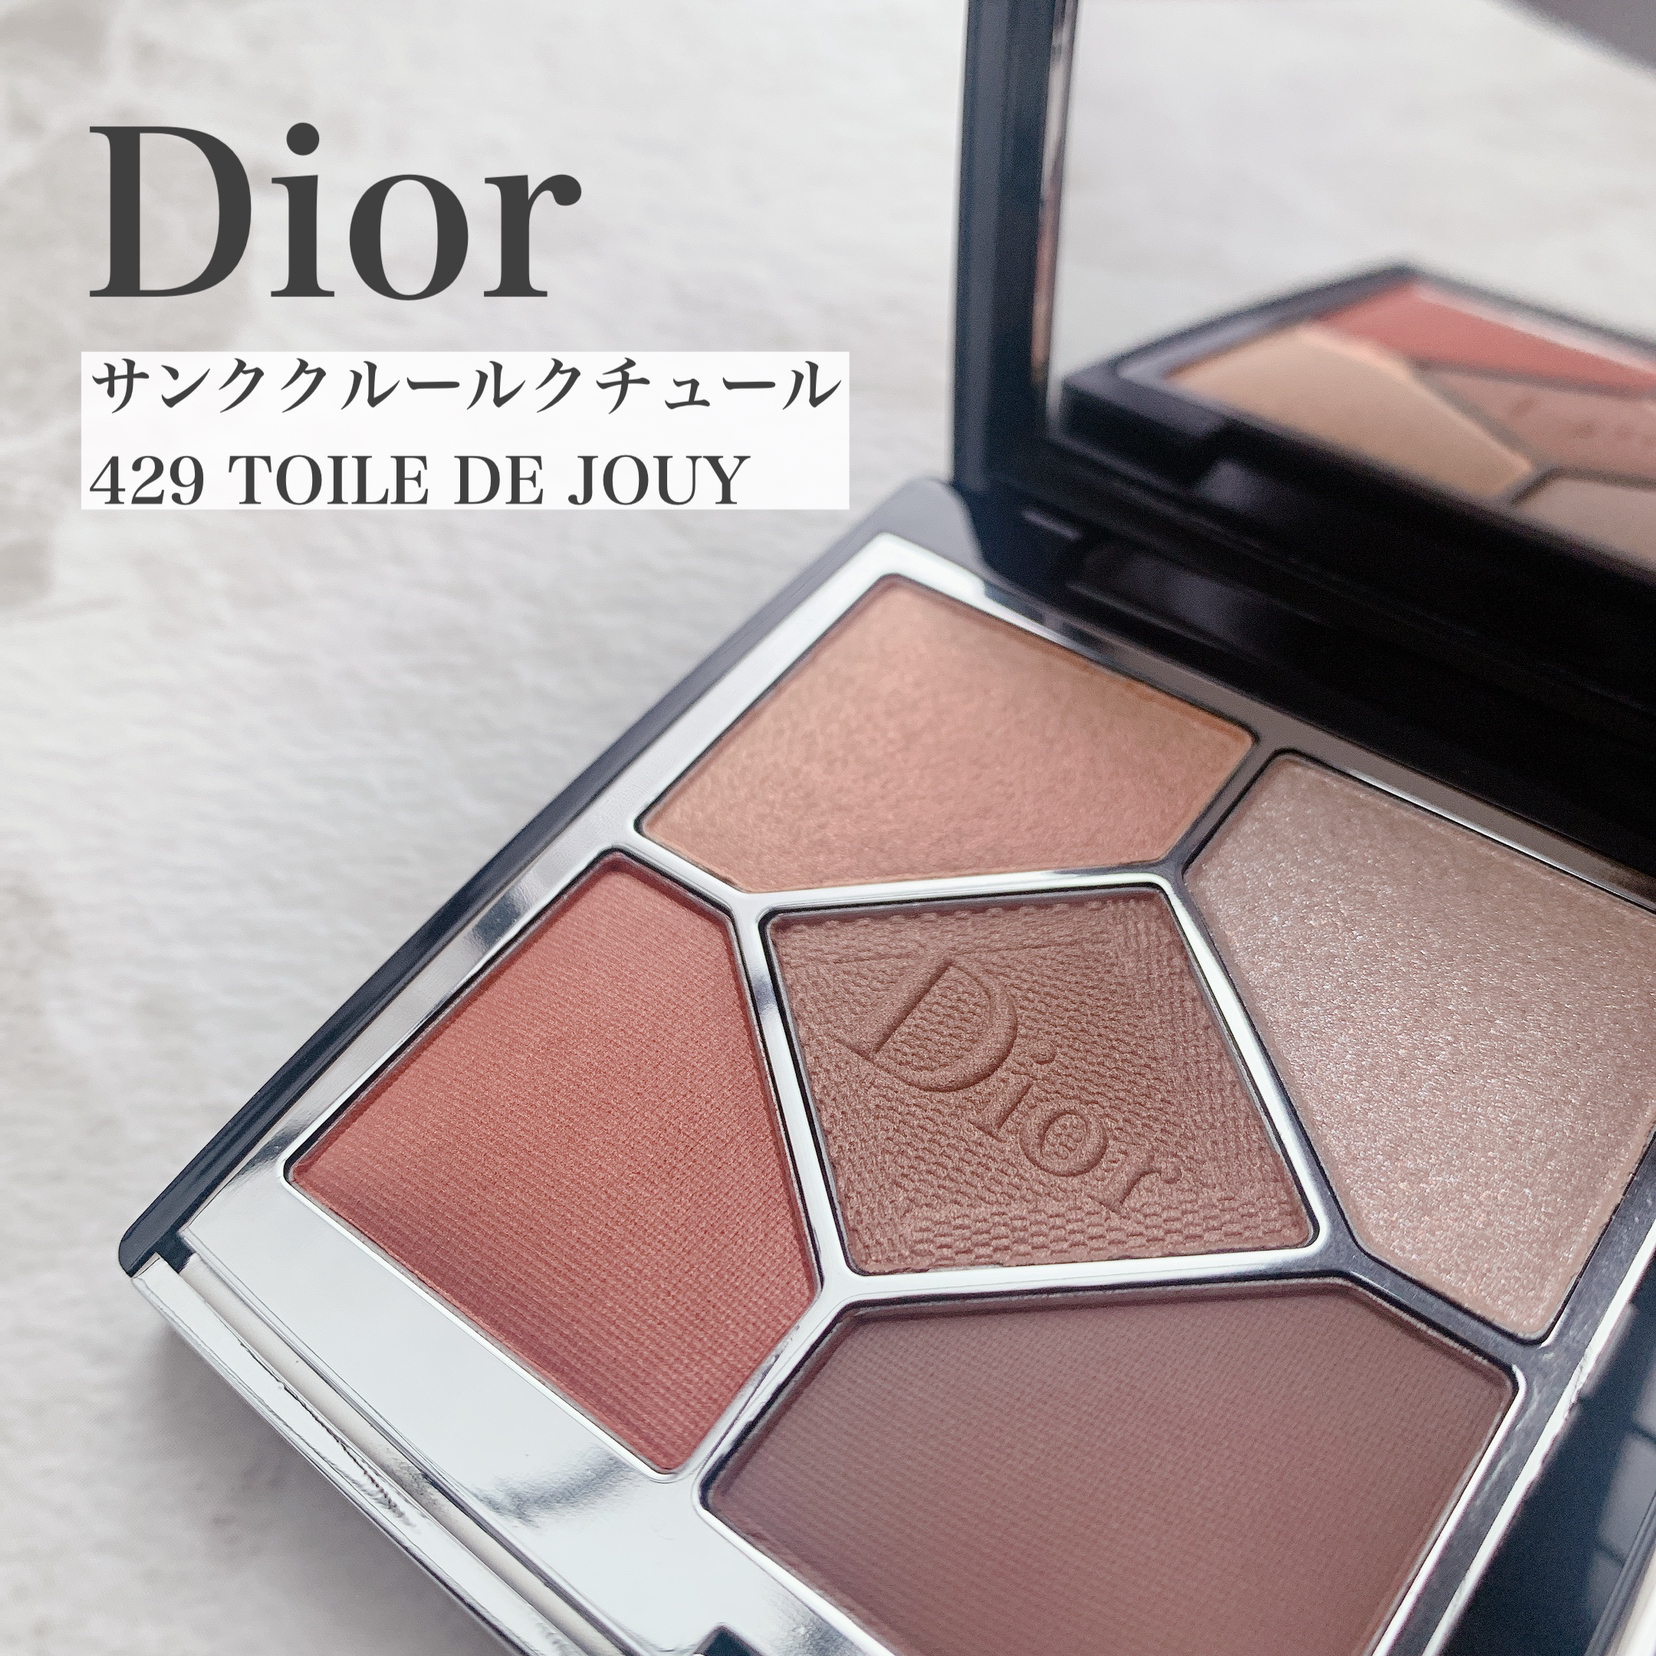 Dior????TOILE DE JOUY | mihiroが投稿したフォトブック | Lemon8